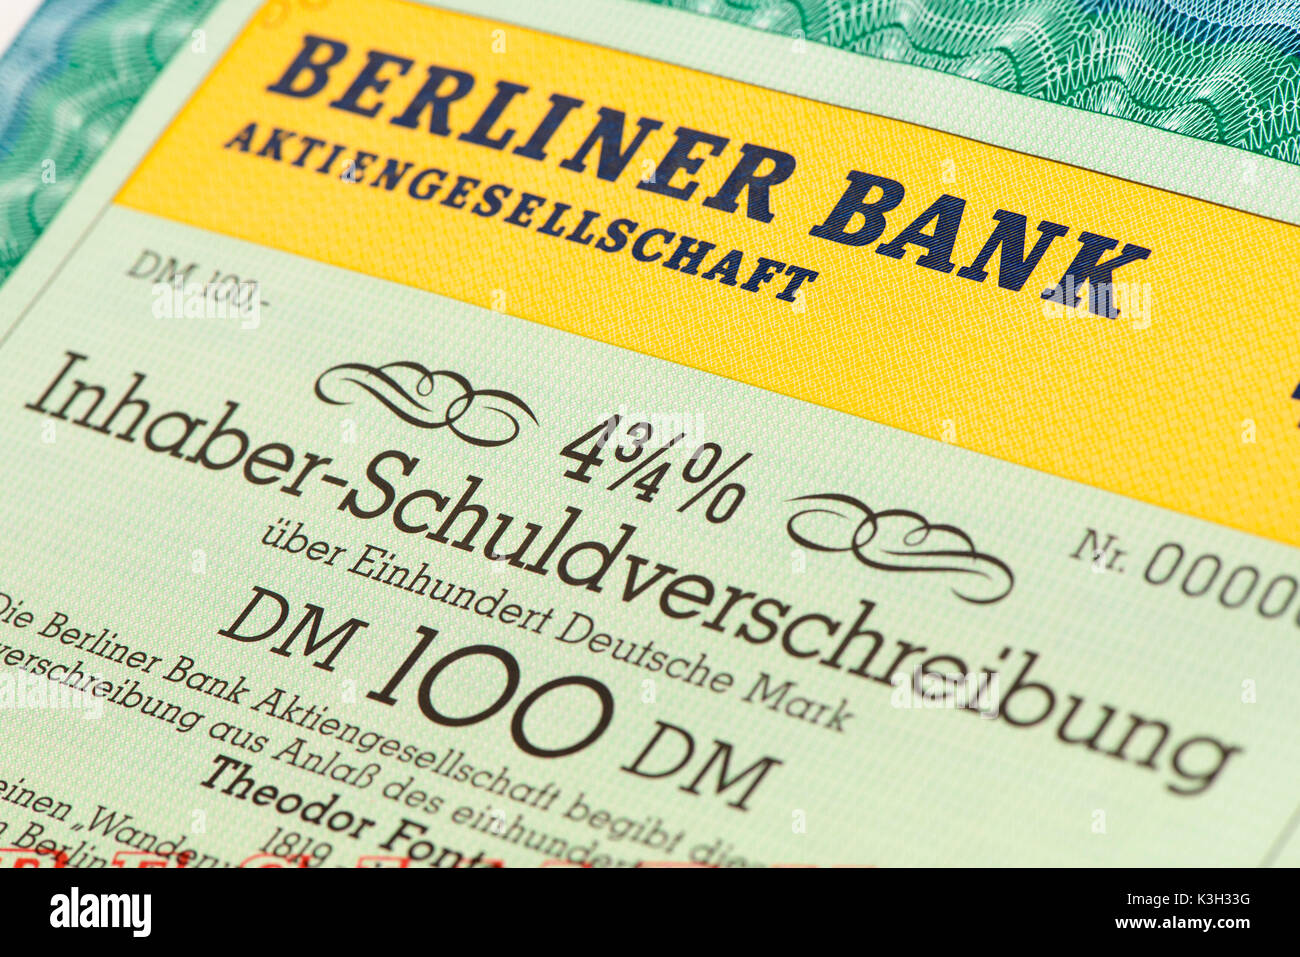 Obbligazioni al portatore della banca di Berlino Foto Stock